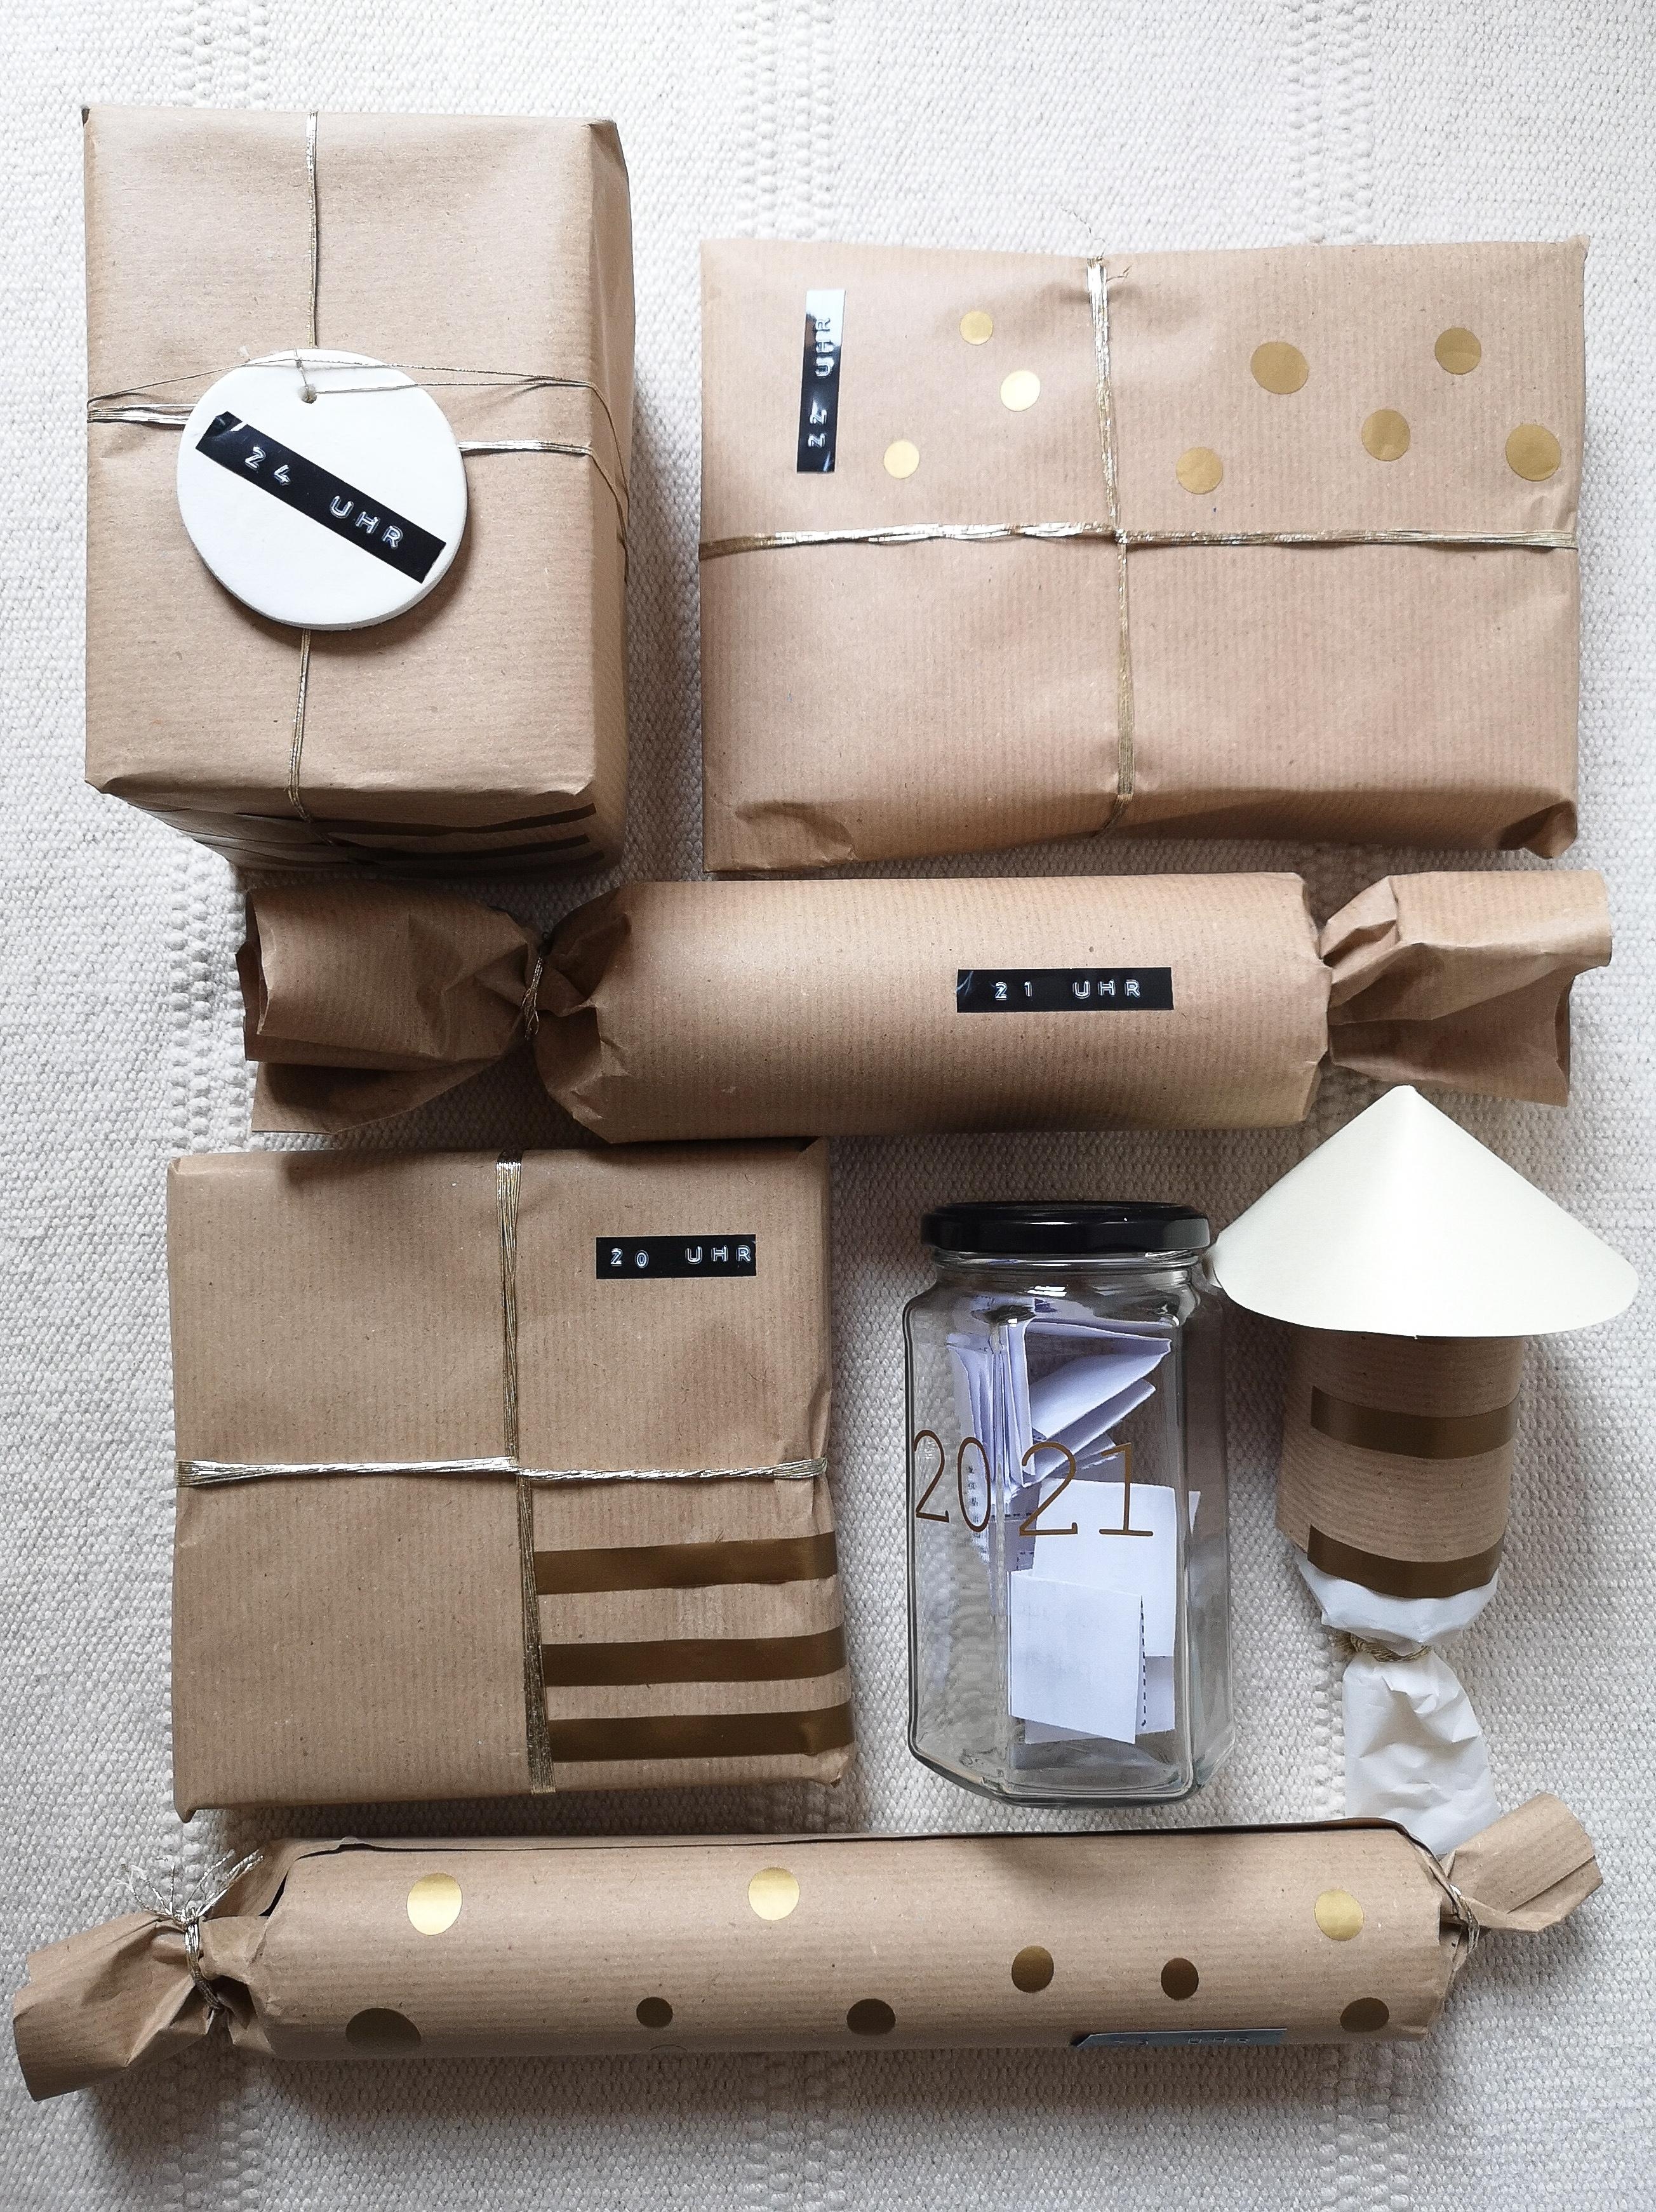 Habt einen tollen Start in die neue Woche. 
#upcycling #cardboard #Geschenke #Geschenkverpackung #diy #nachhaltigkeit 